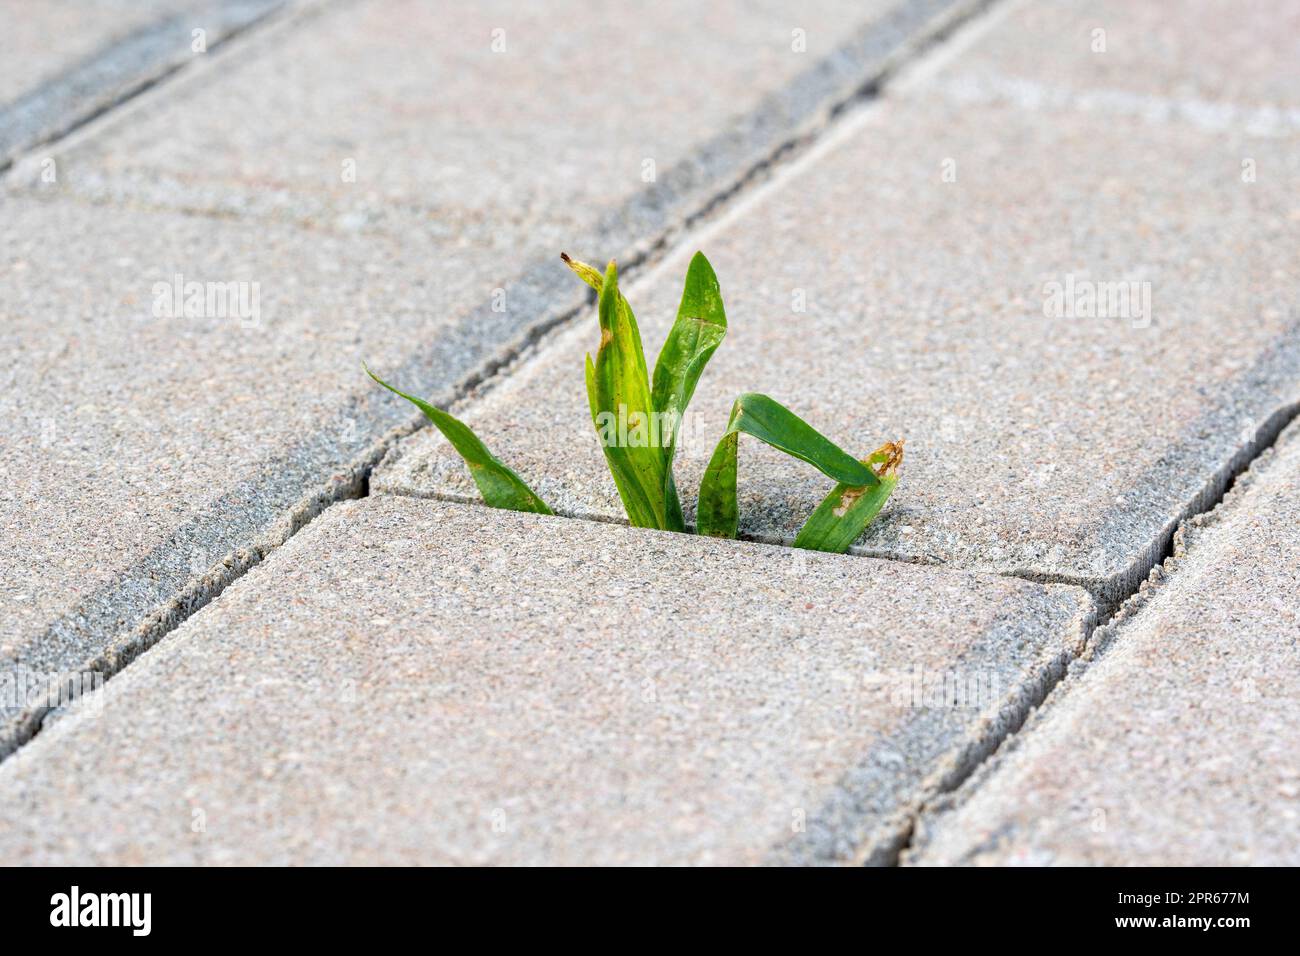 Una piccola pianta con foglie verdi cresce sul marciapiede Foto Stock